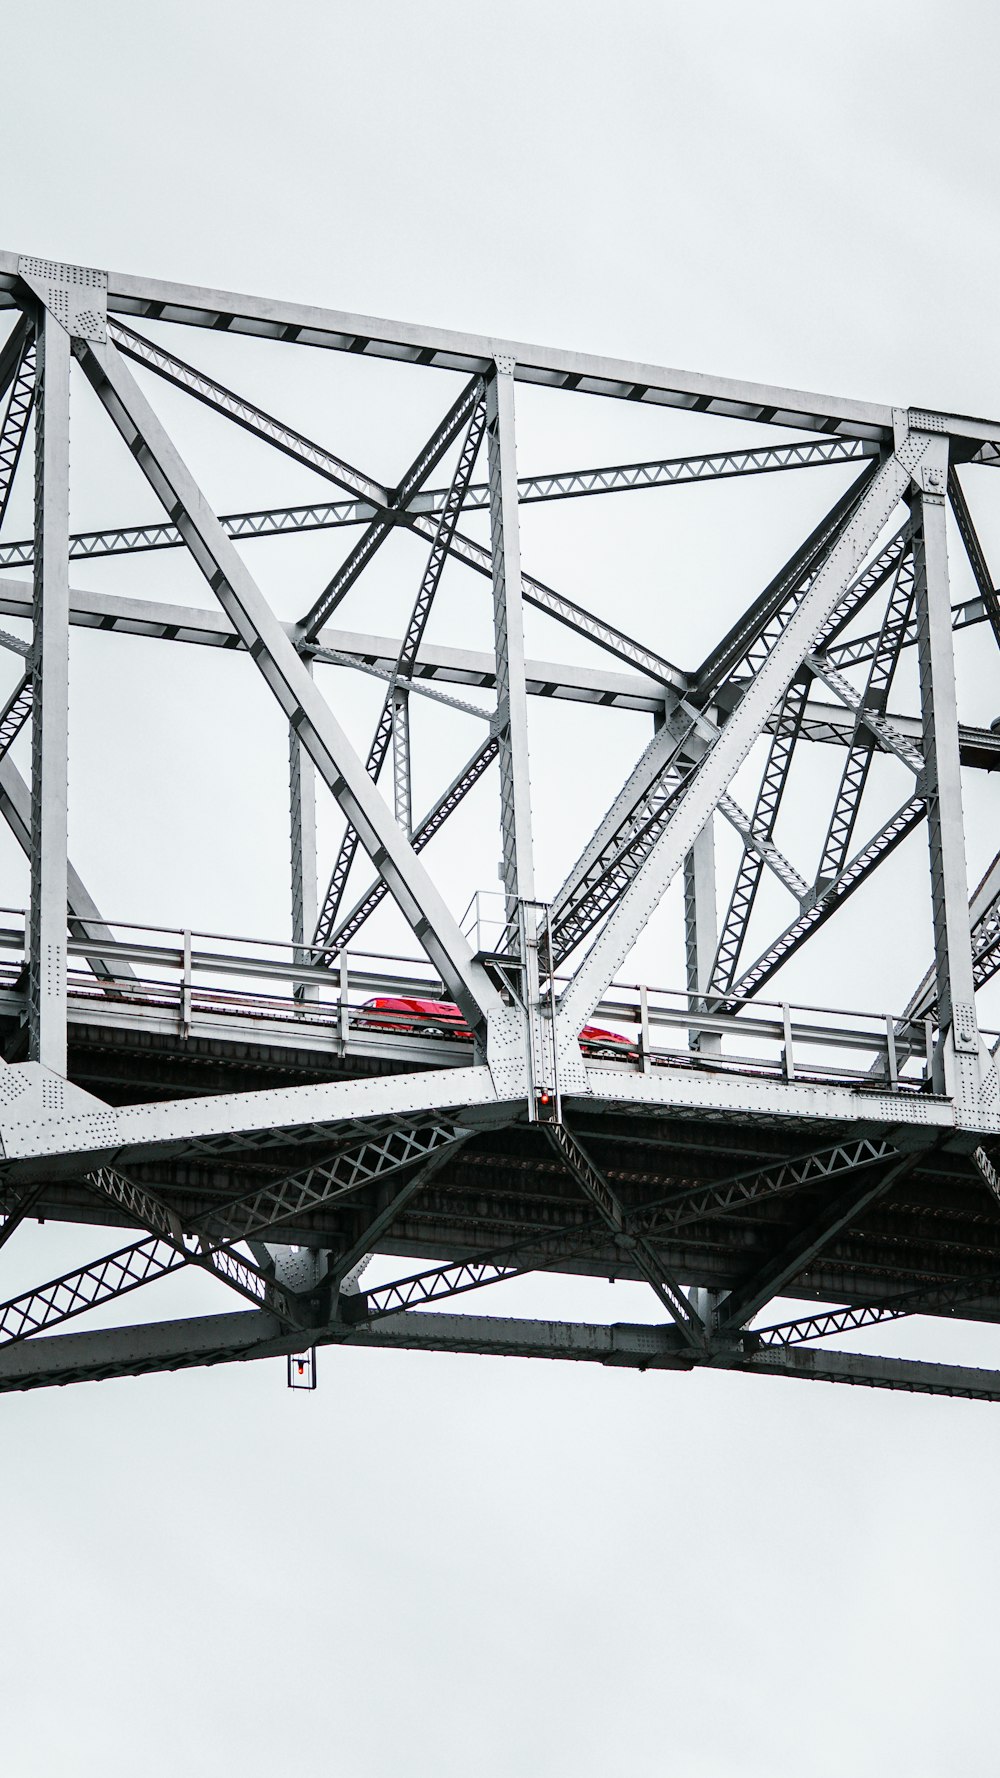 Ein Zug auf einer Brücke